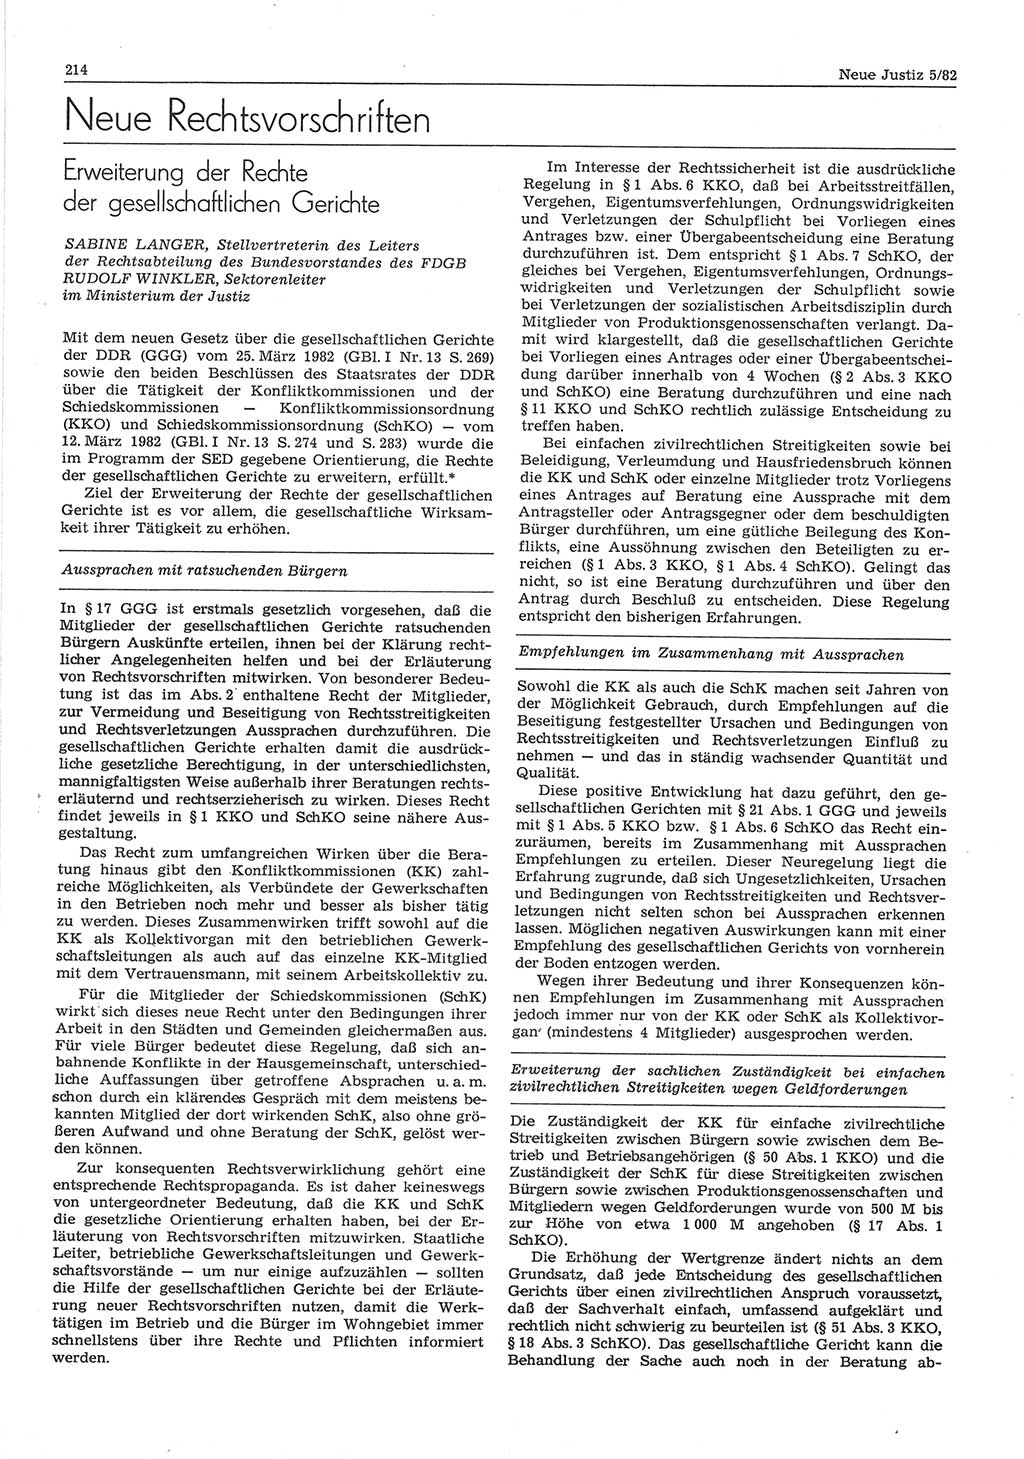 Neue Justiz (NJ), Zeitschrift für sozialistisches Recht und Gesetzlichkeit [Deutsche Demokratische Republik (DDR)], 36. Jahrgang 1982, Seite 214 (NJ DDR 1982, S. 214)